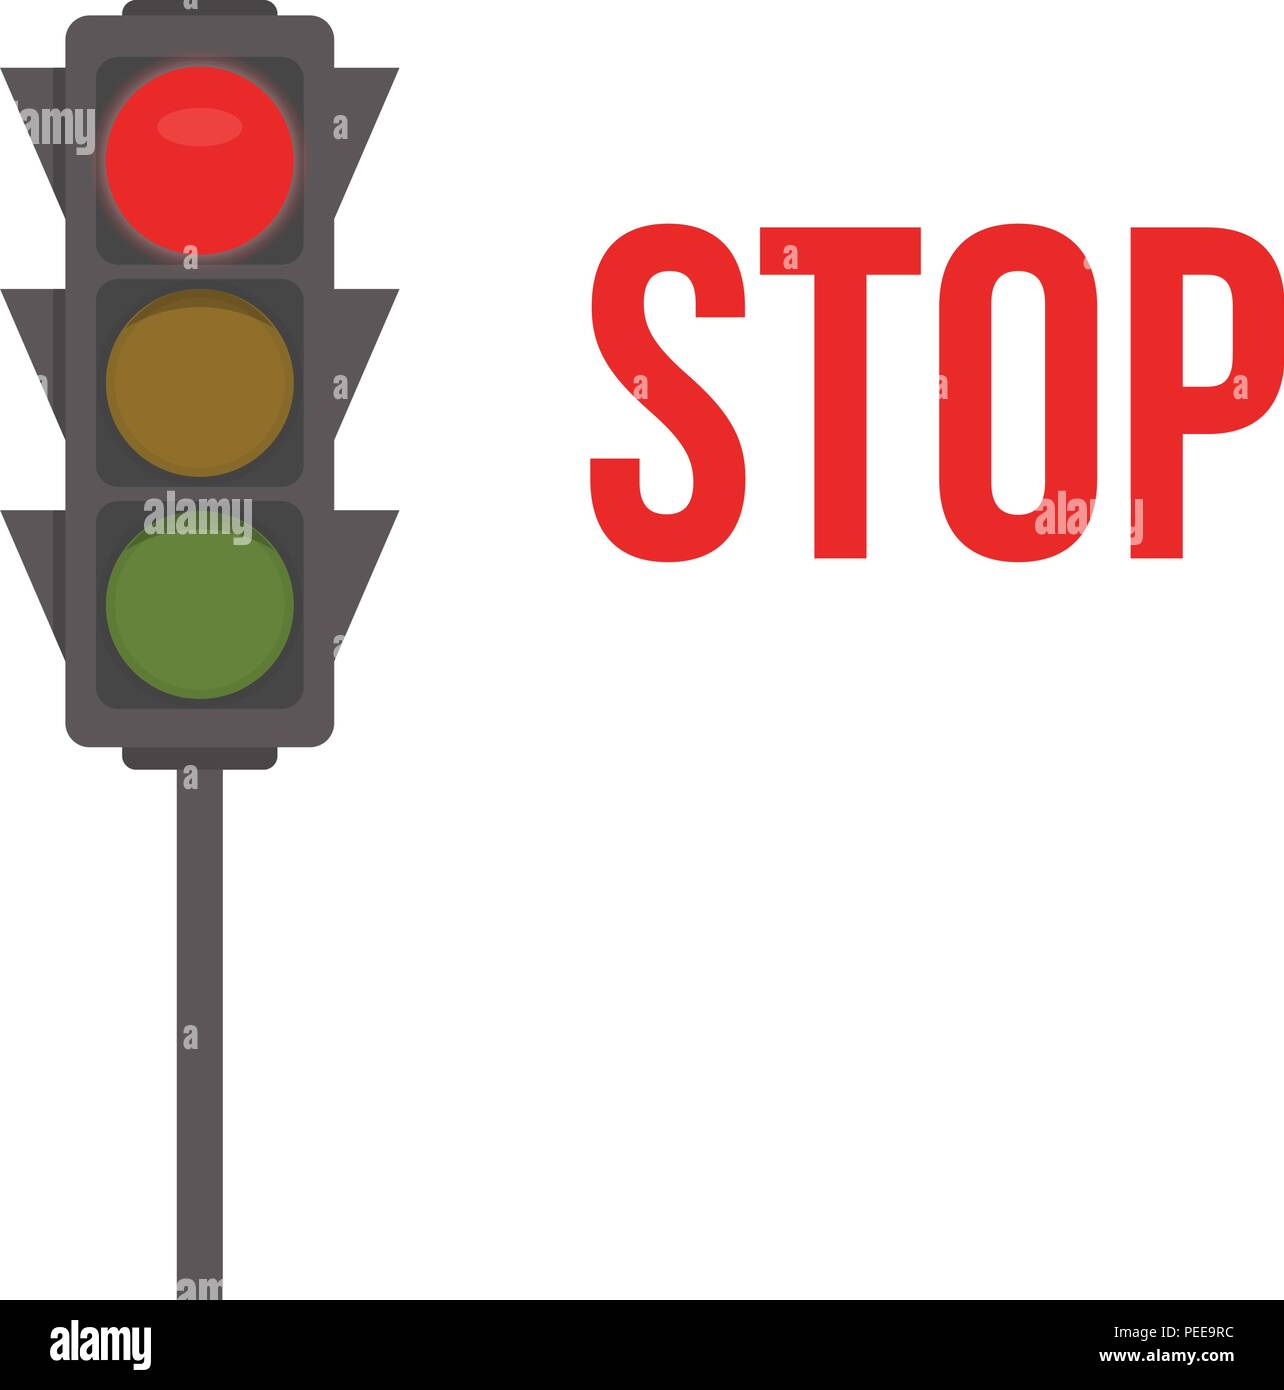 Semaforo icona isolato. Luci Rosse, il segnale di stop del semaforo illustrazione vettoriale su sfondo bianco. Intersezione stradale, regolamento segno, regole di traffico elemento di design. Illustrazione Vettoriale